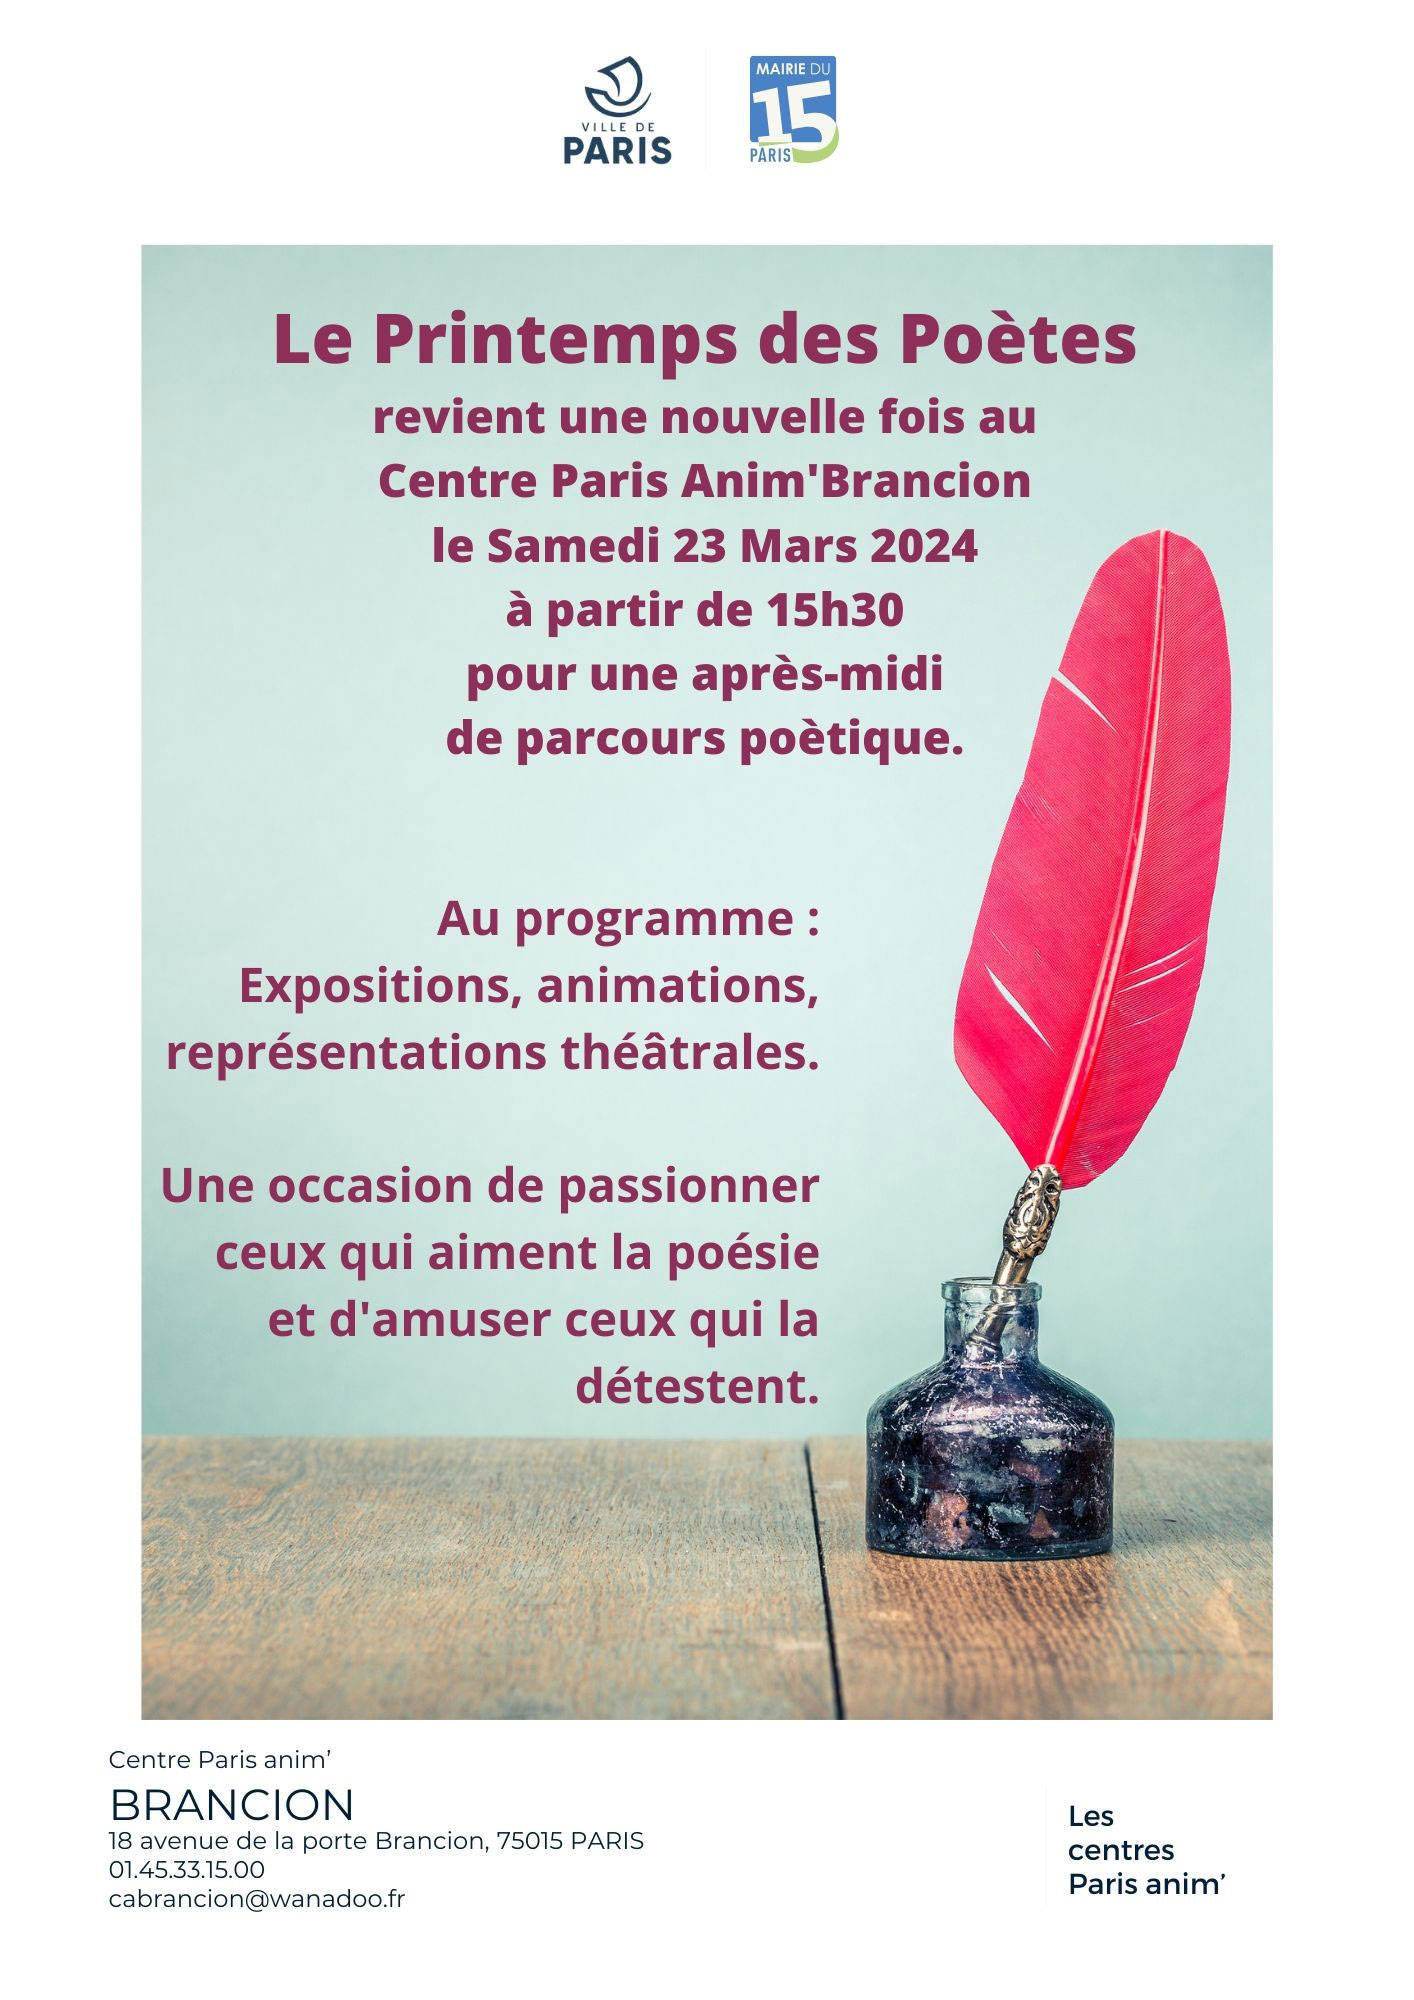 Le printemps des poètes revient au centre Brancion Paris 15 le samedi 23 mars